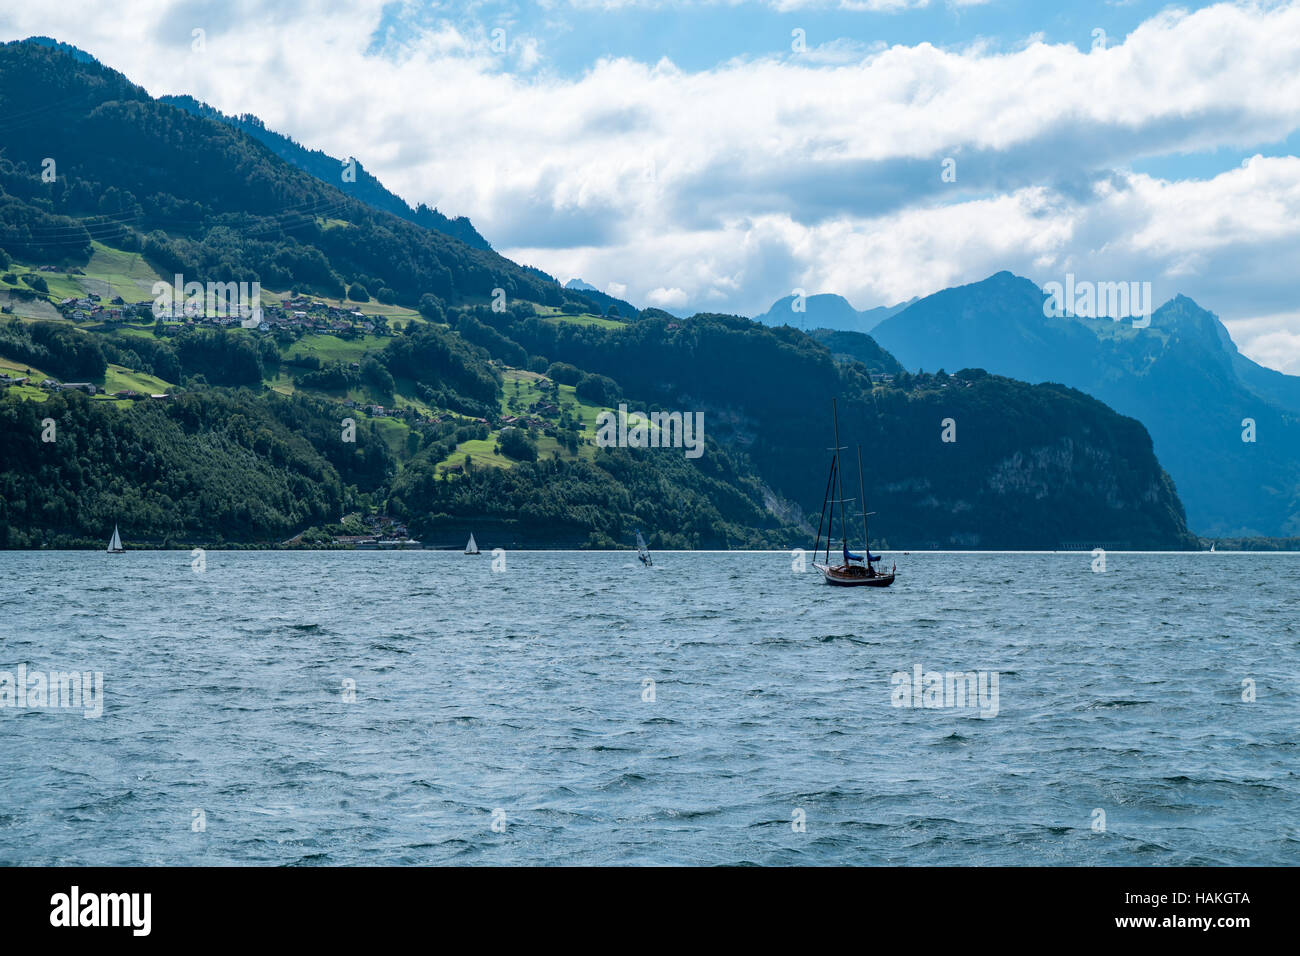 La vista mozzafiato sul lago con barche su di esso e le montagne sullo sfondo in Svizzera Foto Stock